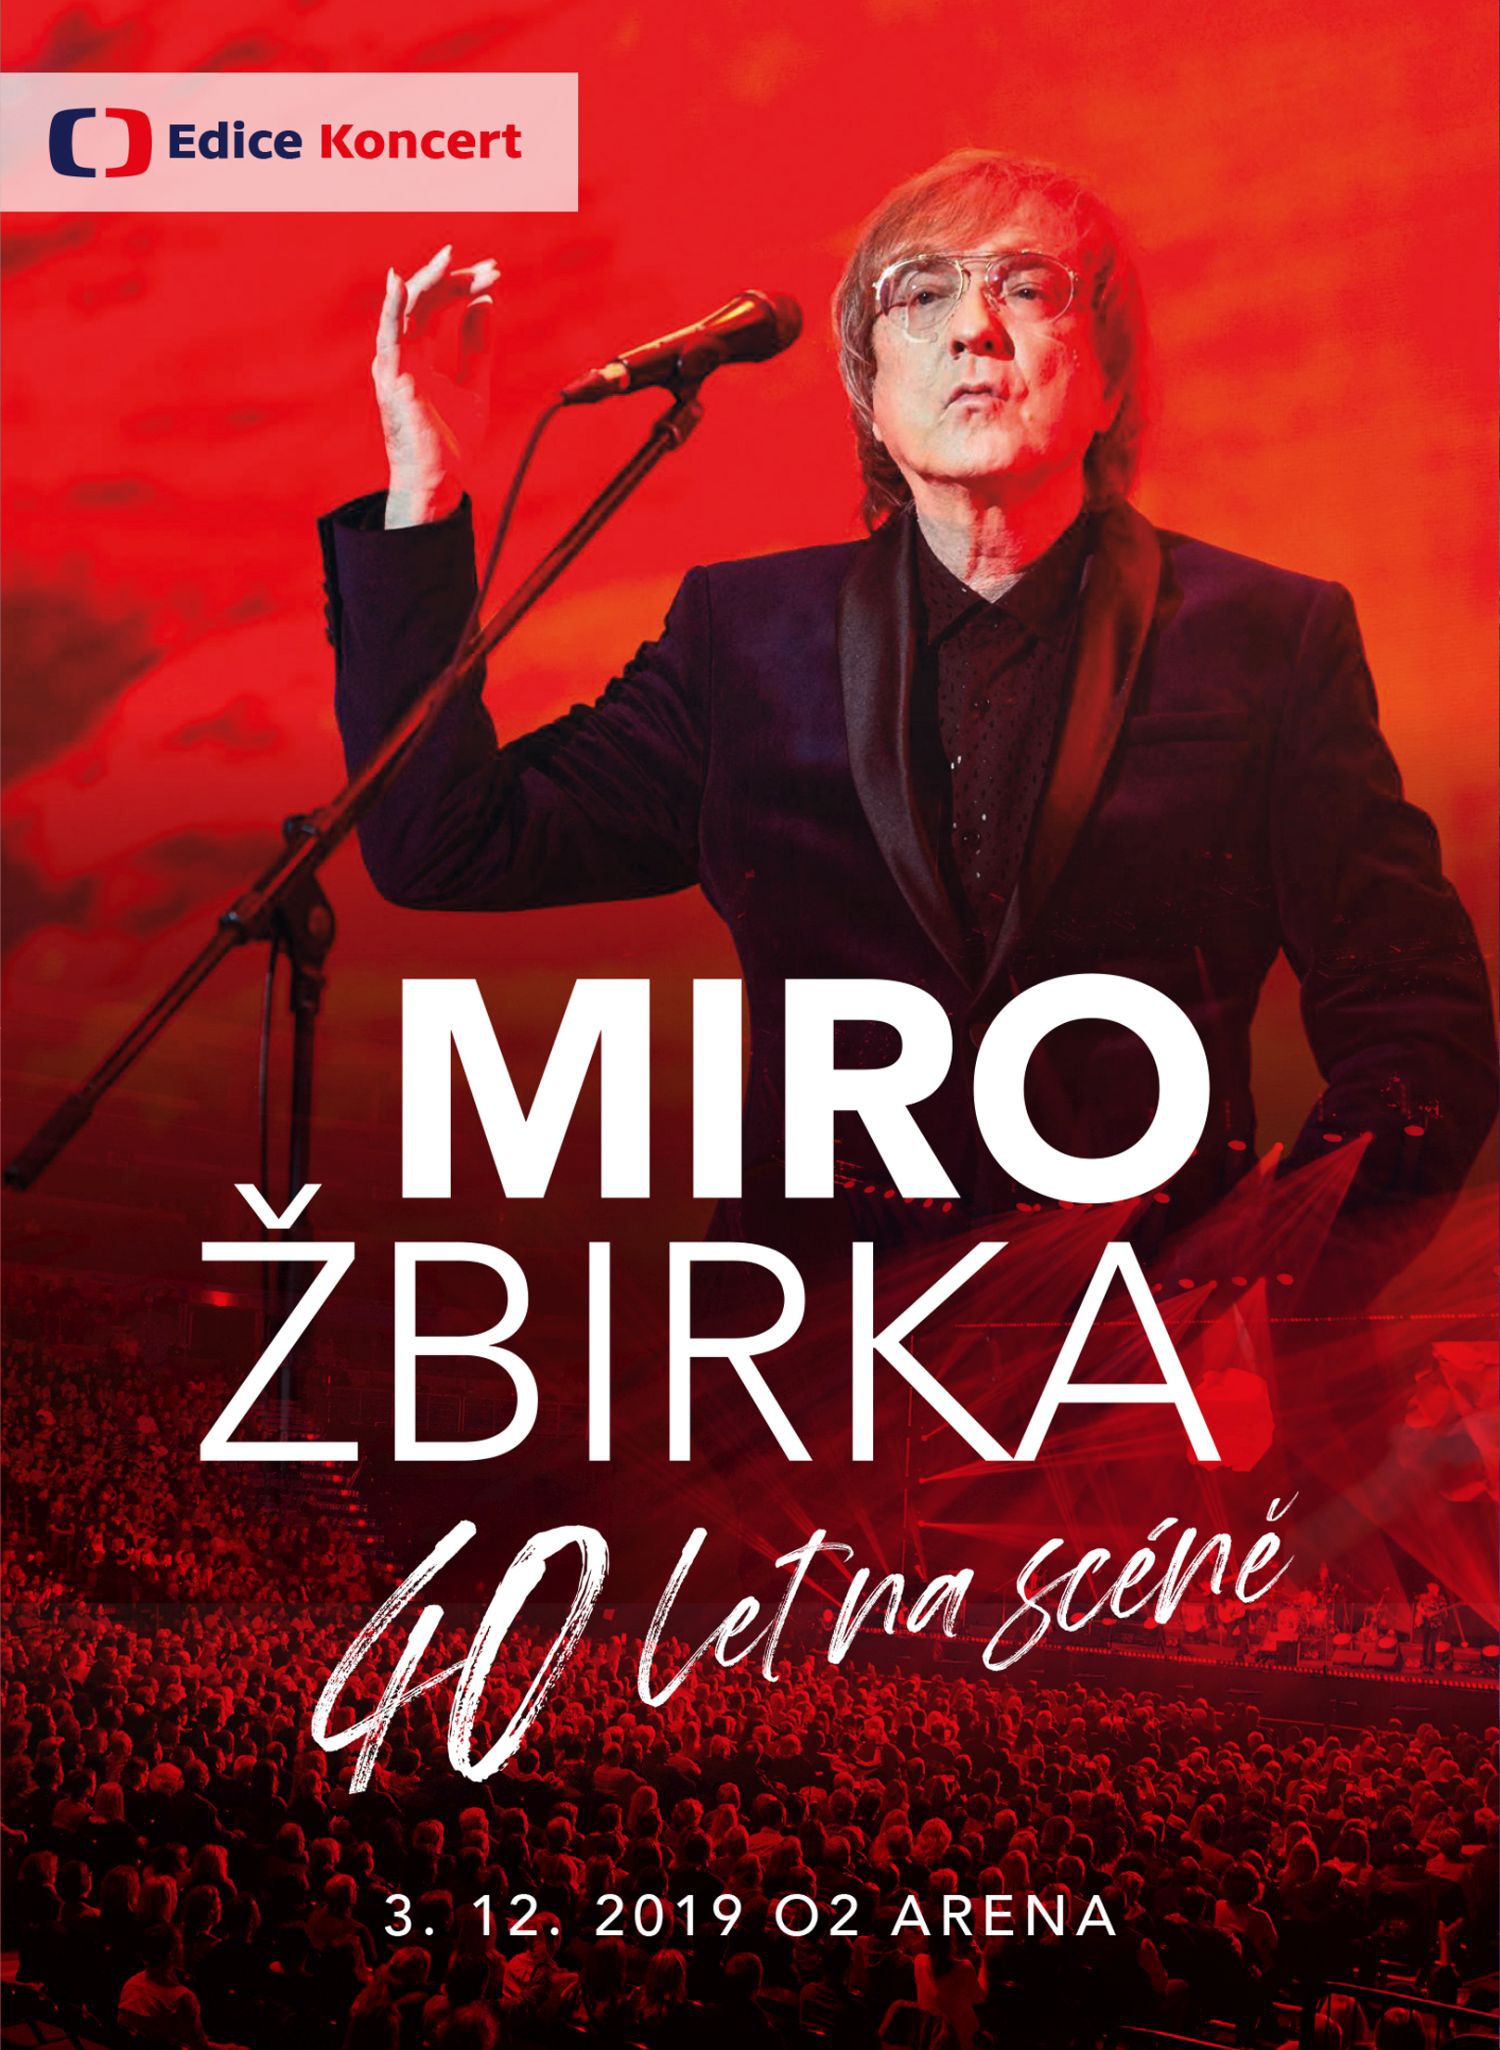 CD Shop - ZBIRKA MIRO 40 LET NA SCENE